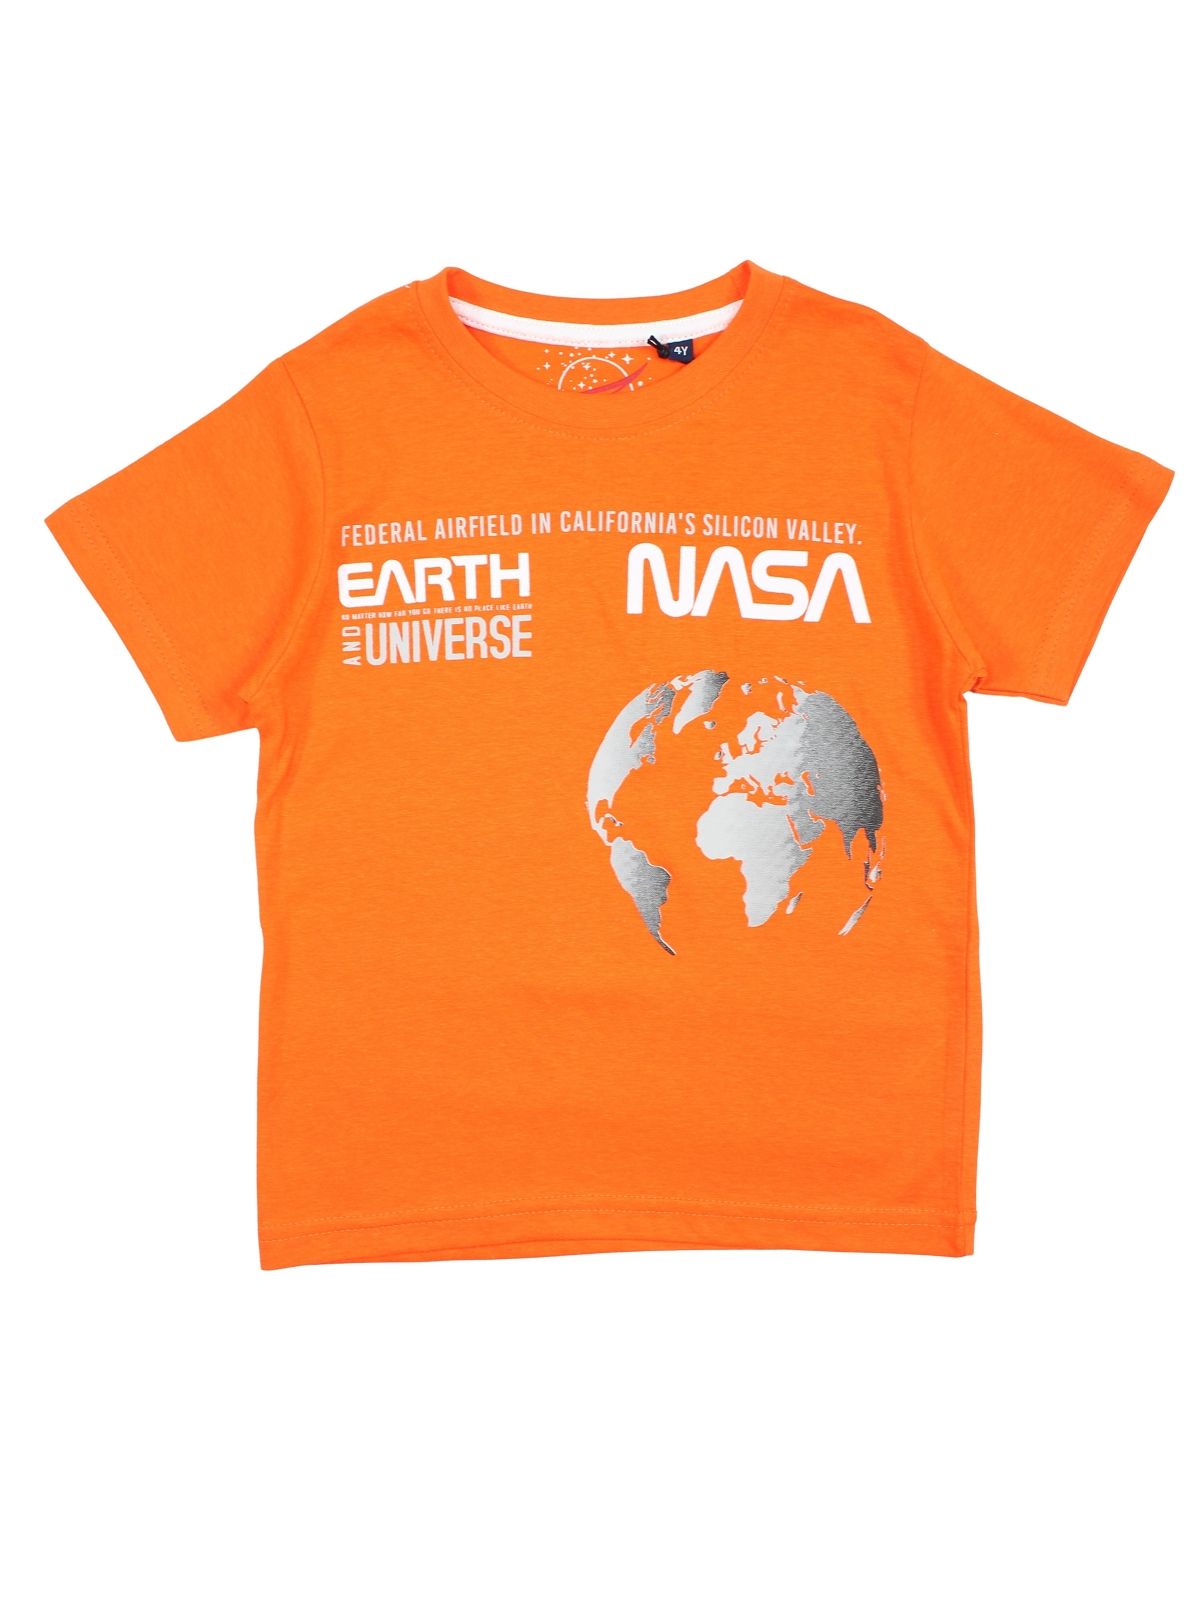 Camiseta de la NASA para hombre